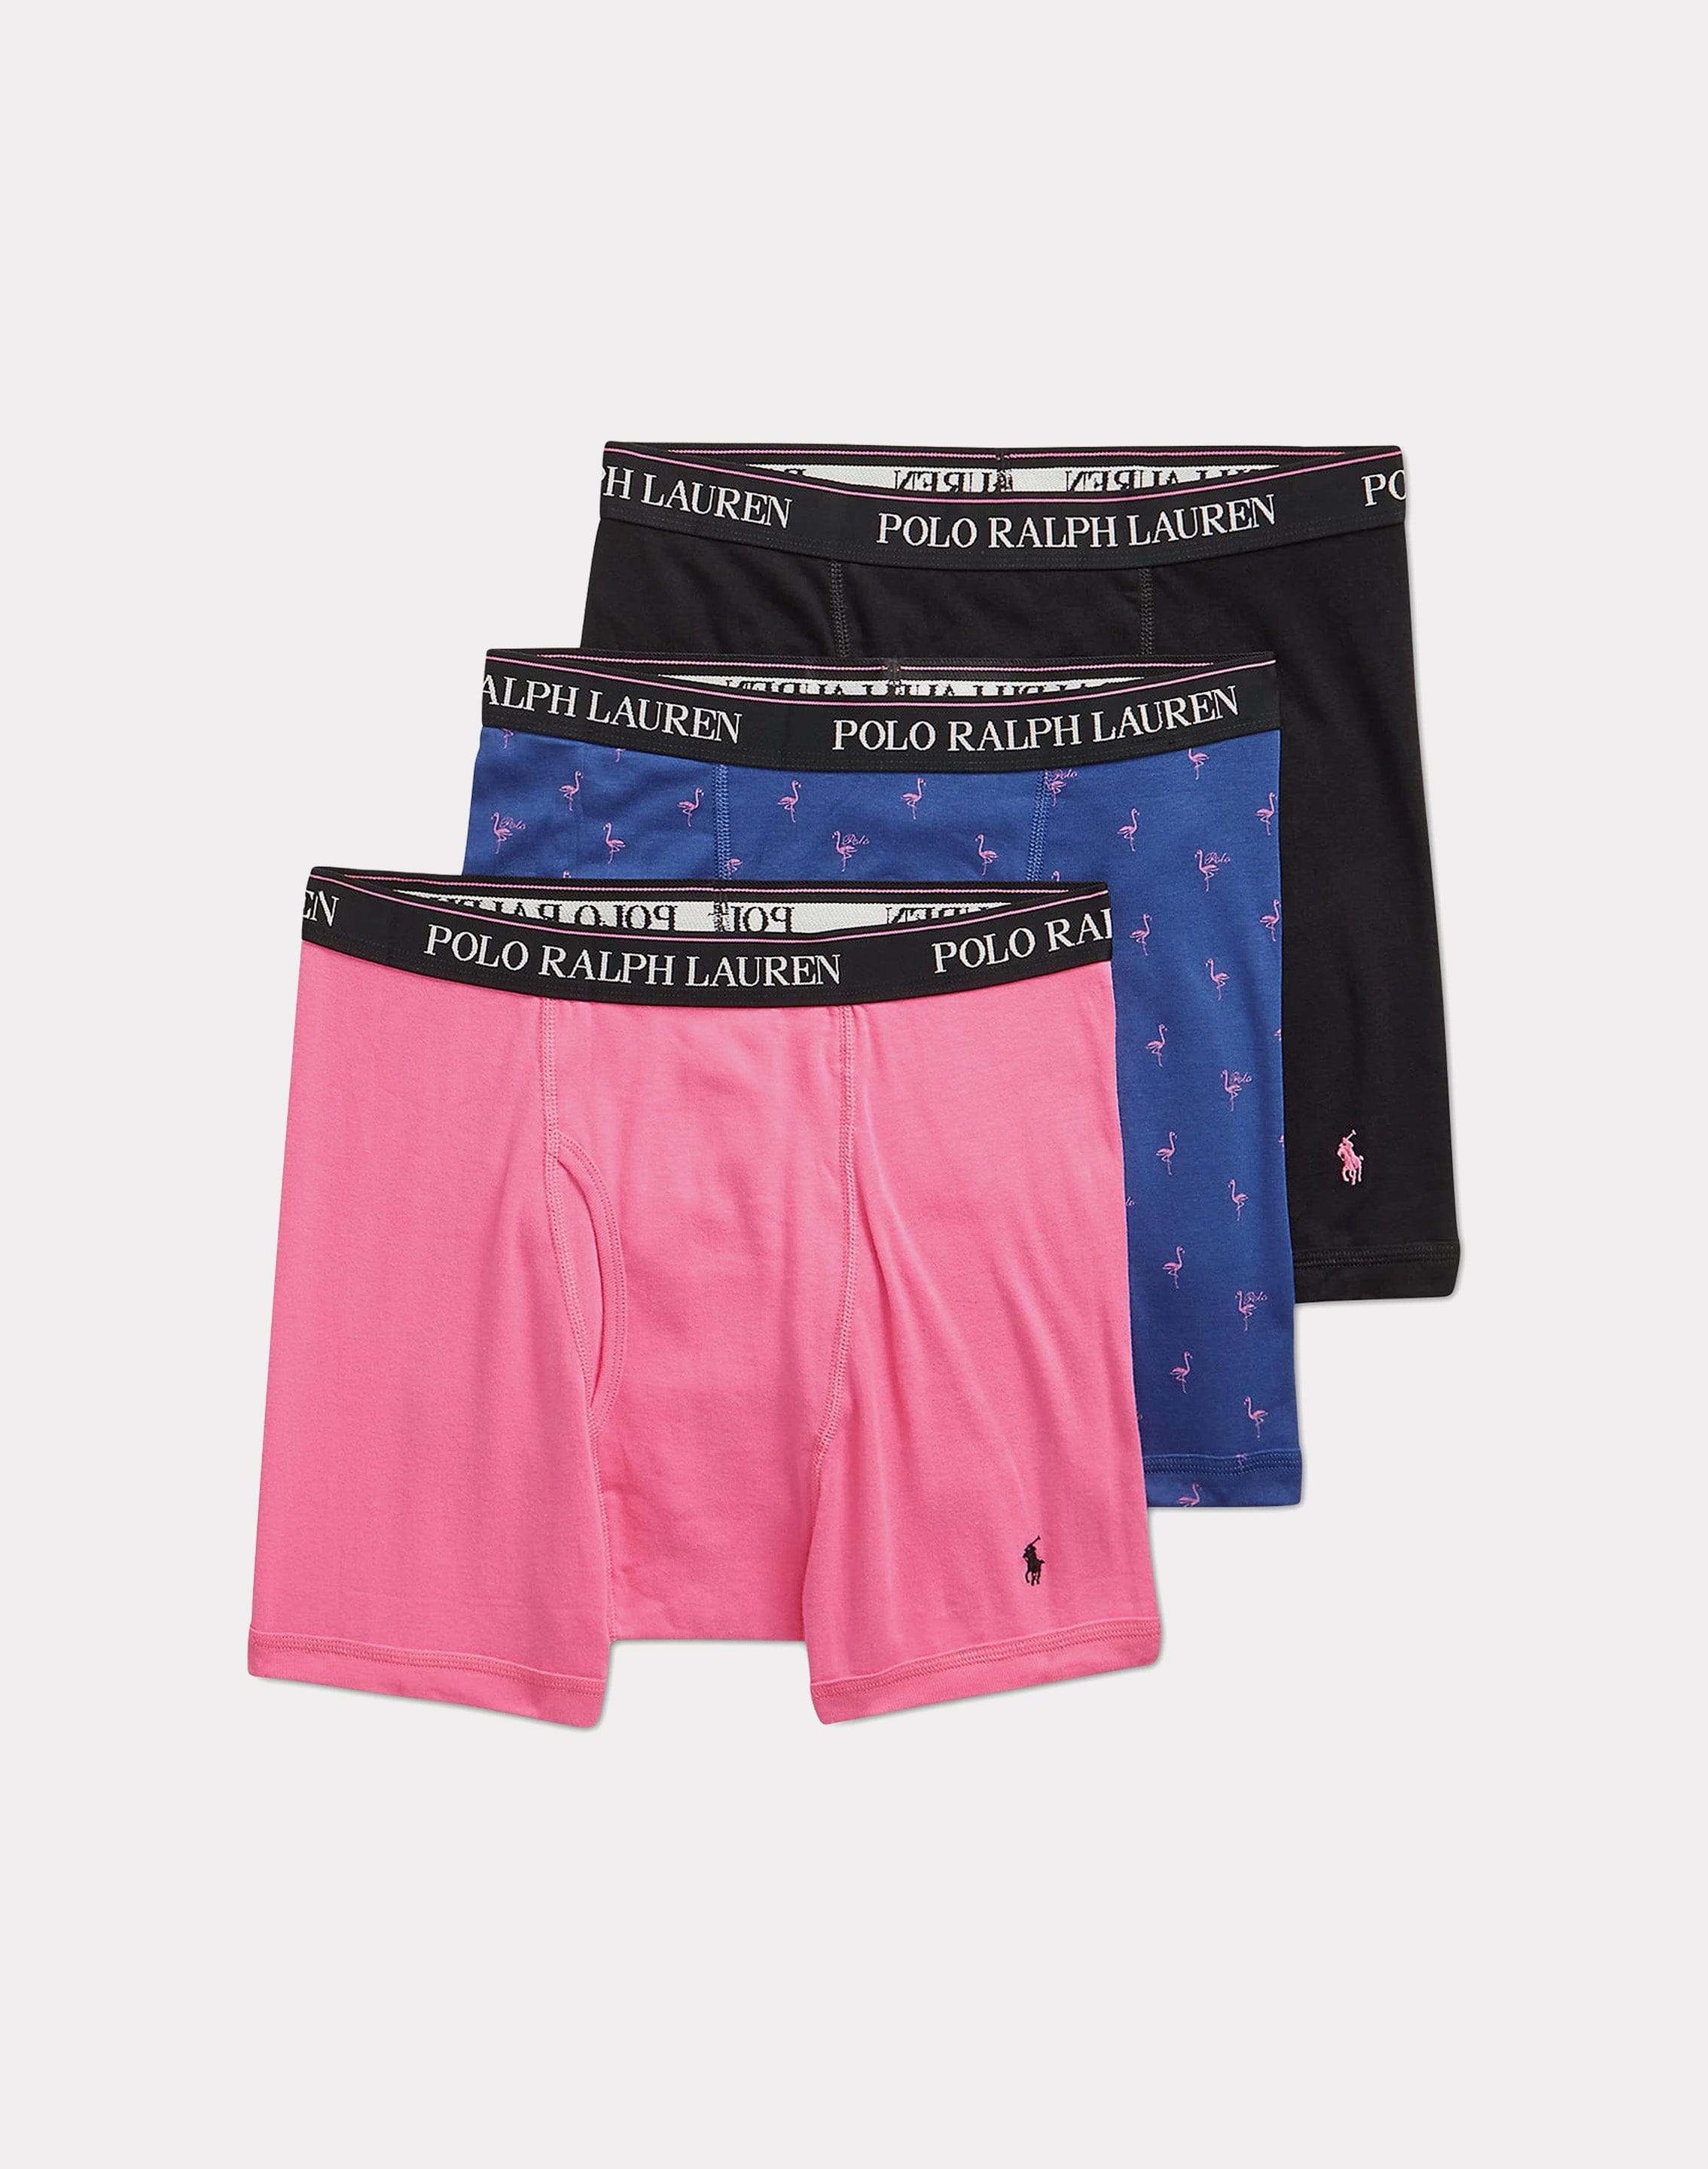 Polo Ralph Lauren Classic Fit Boxer Briefs